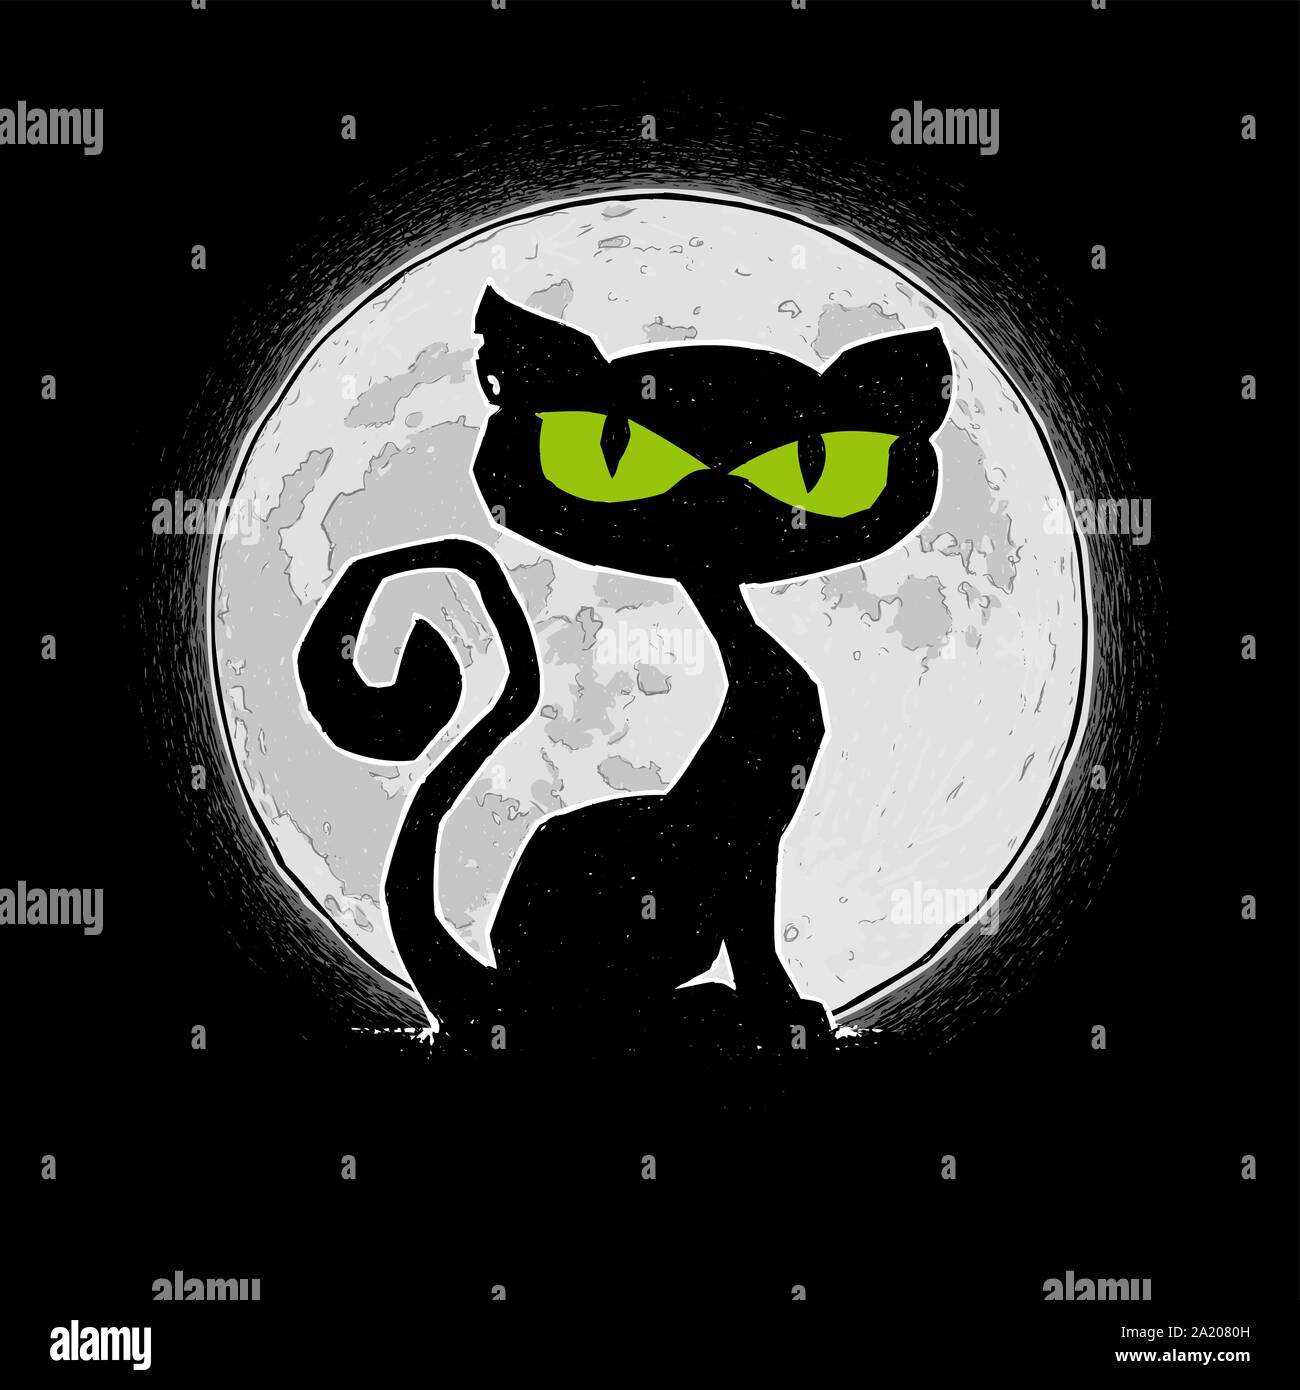 Freie Hand Halloween Cartoon Abbildung: Schwarze Katze gegen einen Vollmond. Mit Lineart, Schattierungen, Farbe n Hintergrund aller Elemente Vektorisiert ne Stock Vektor